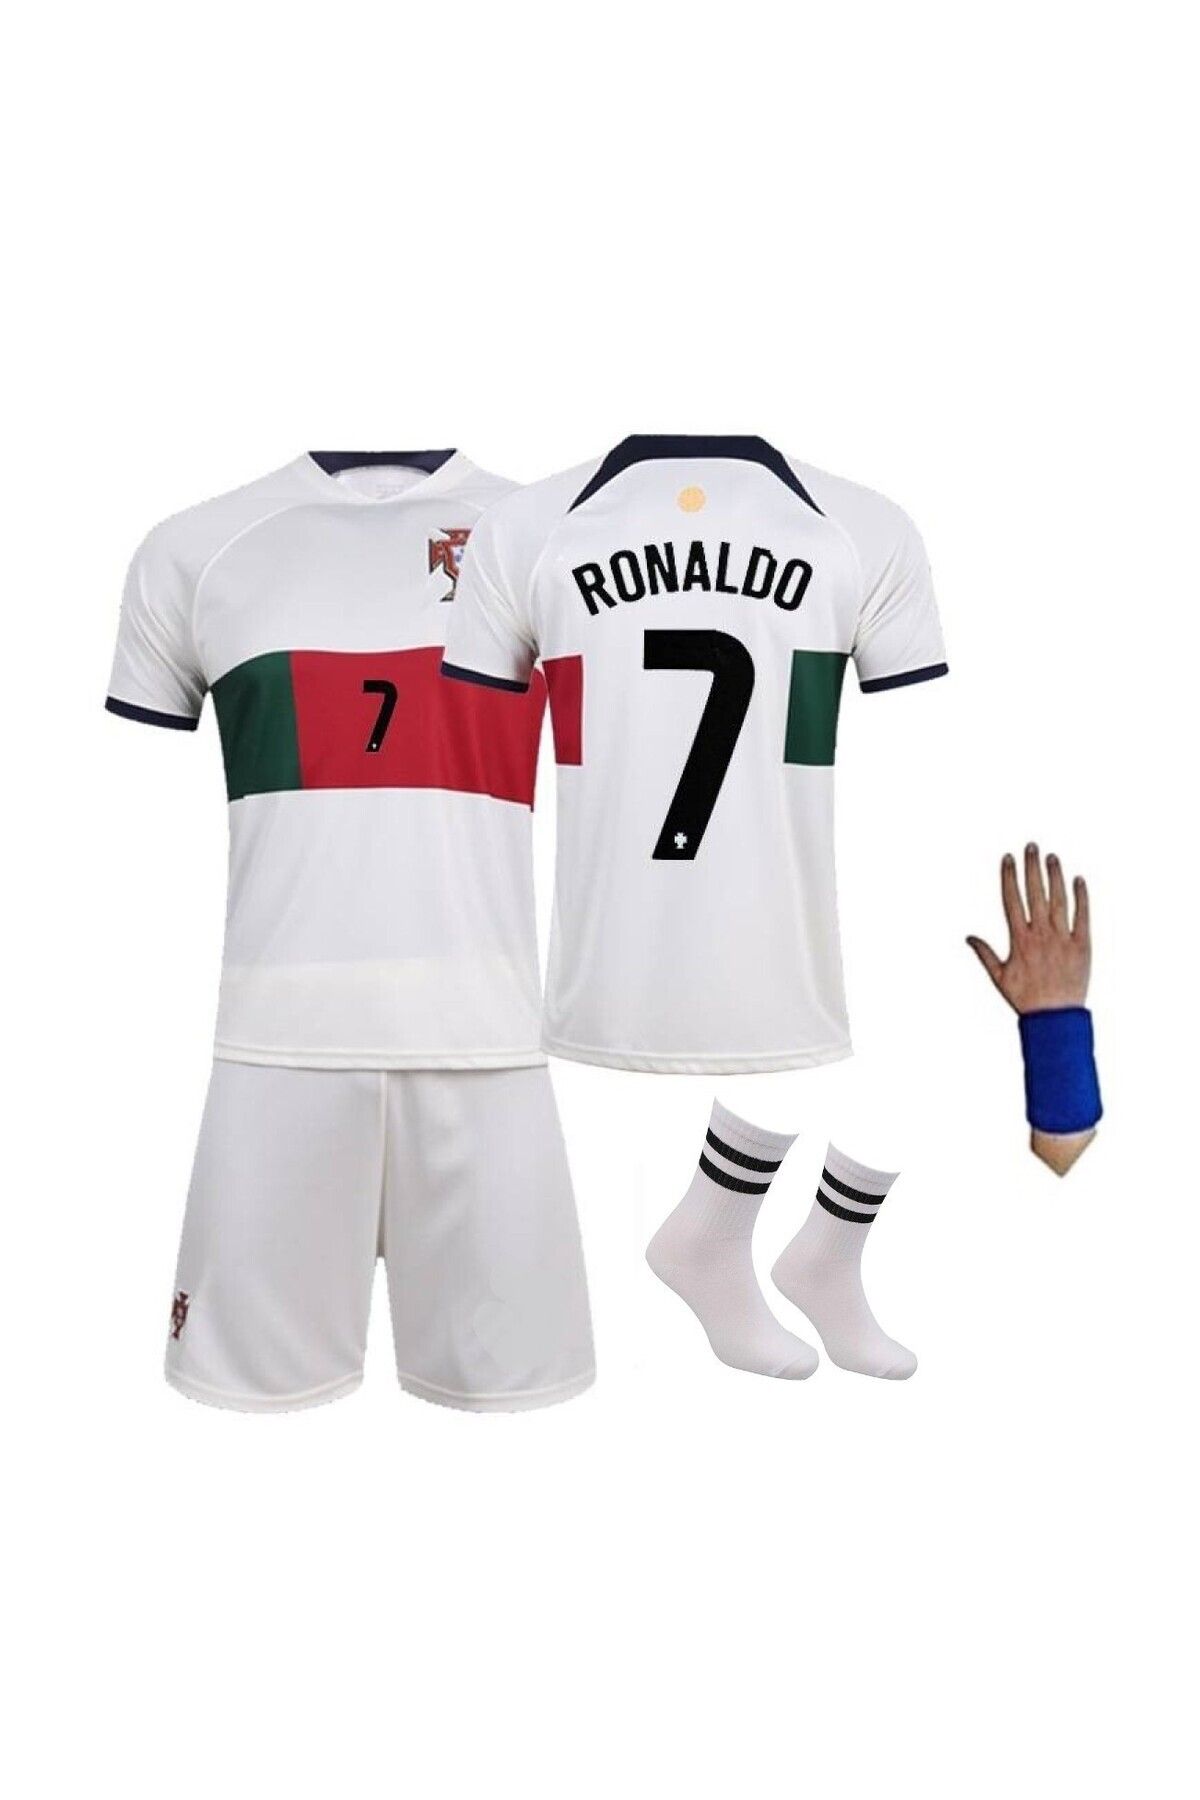 yenteks Ronaldo Çocuk Futbol Forması 4 Lü Set Beyaz Bordo Portekiz Dünya Kupası Cr 07 Efsane Forması